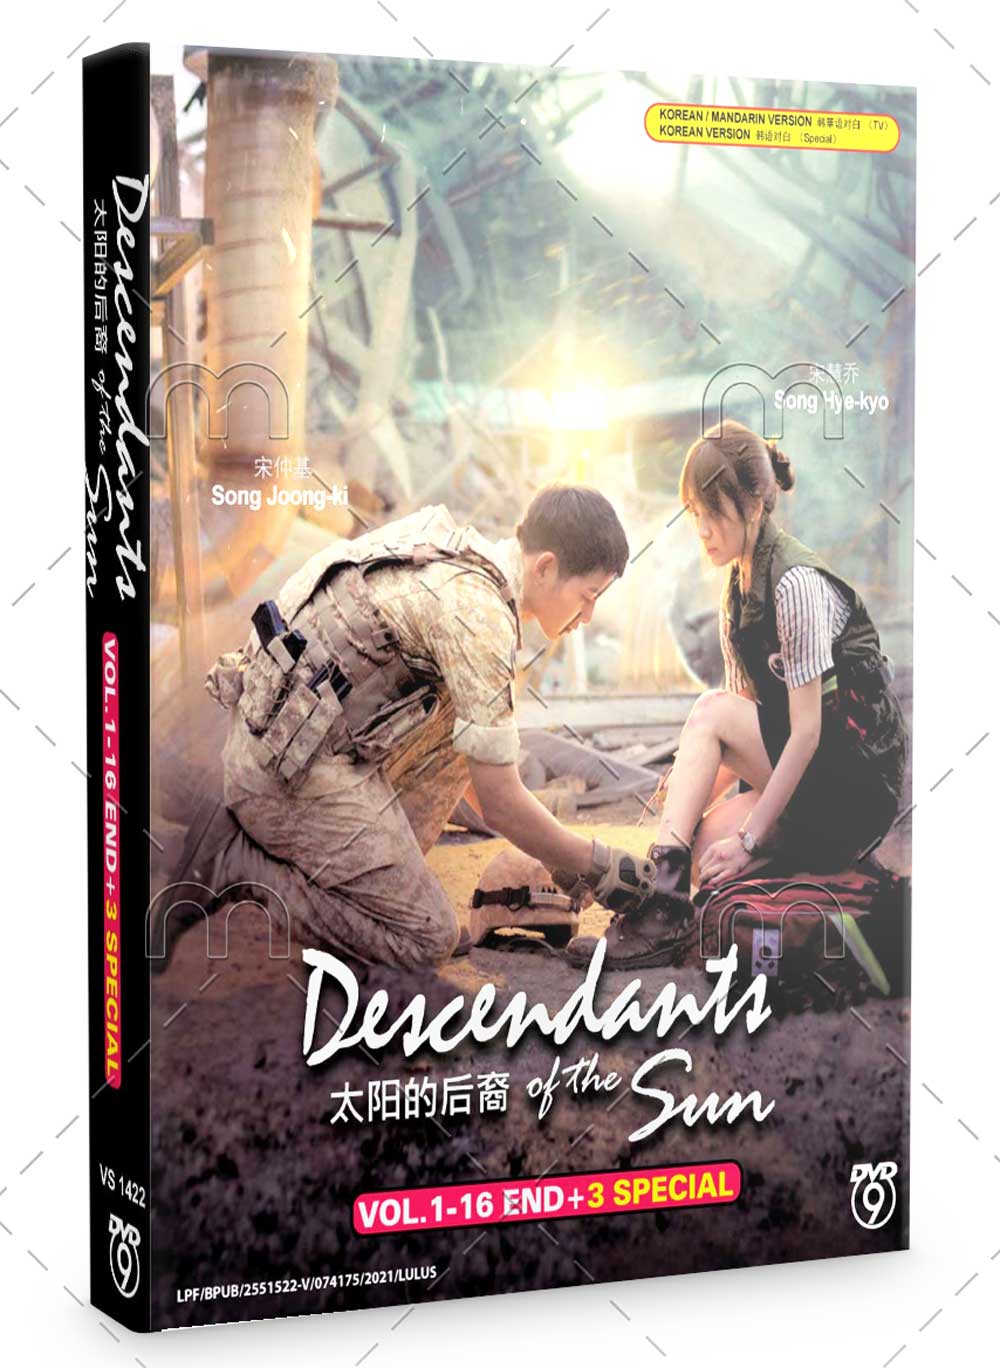 太阳的后裔 + 3 Special (DVD) (2016) 韩剧